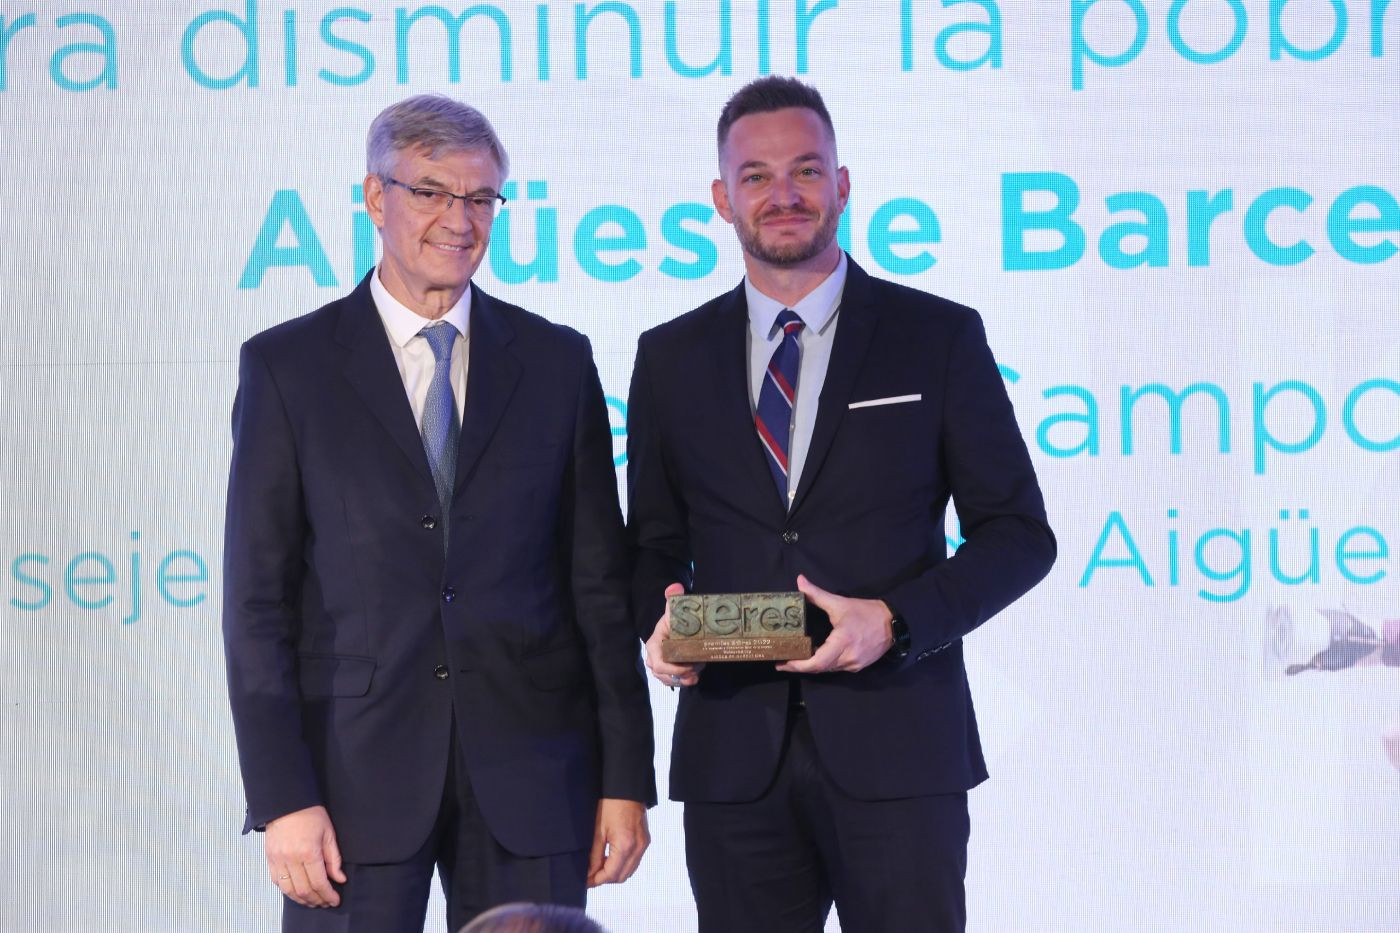 El consejero delegado de Aigües de Barcelona, Felipe Campos, recogiendo el premio SERES en Madrid / AIGÜES DE BARCELONA